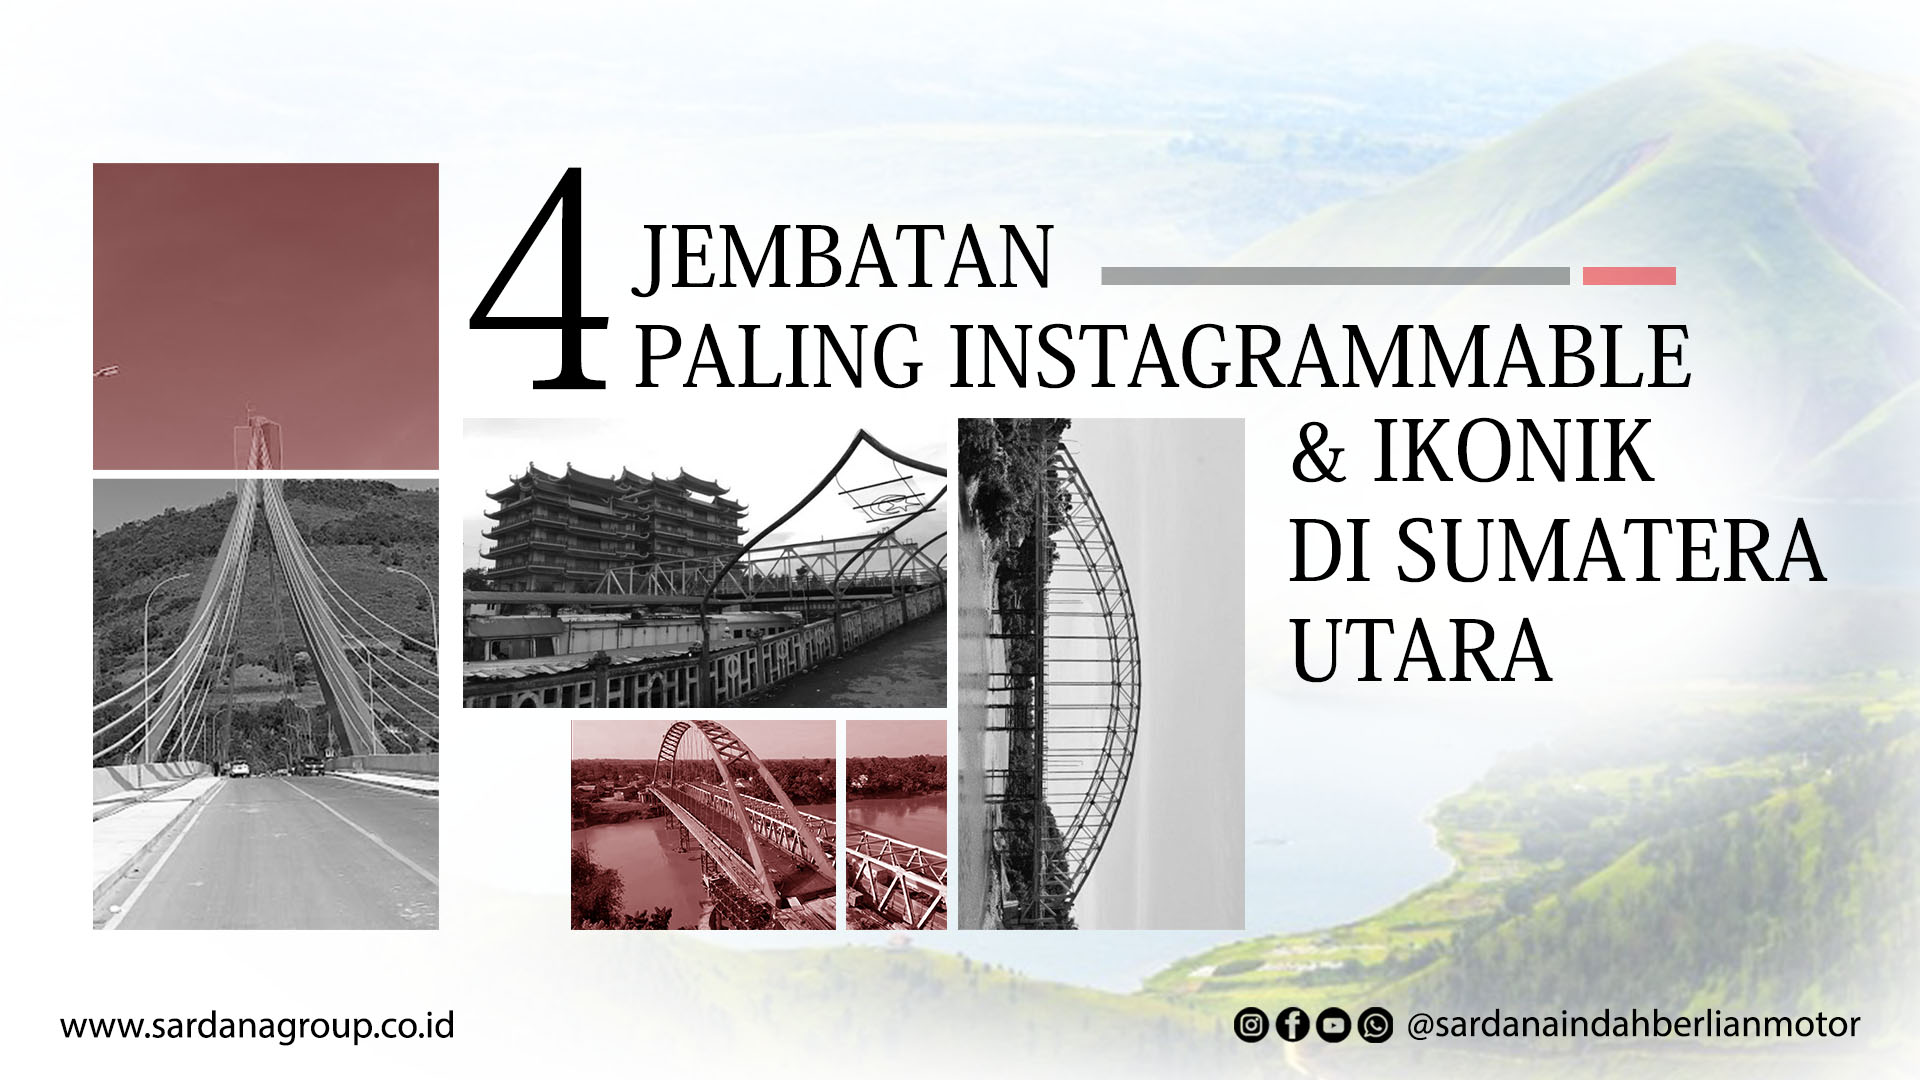 Empat Jembatan Paling Instagrammable dan Ikonik di Sumatera Utara 